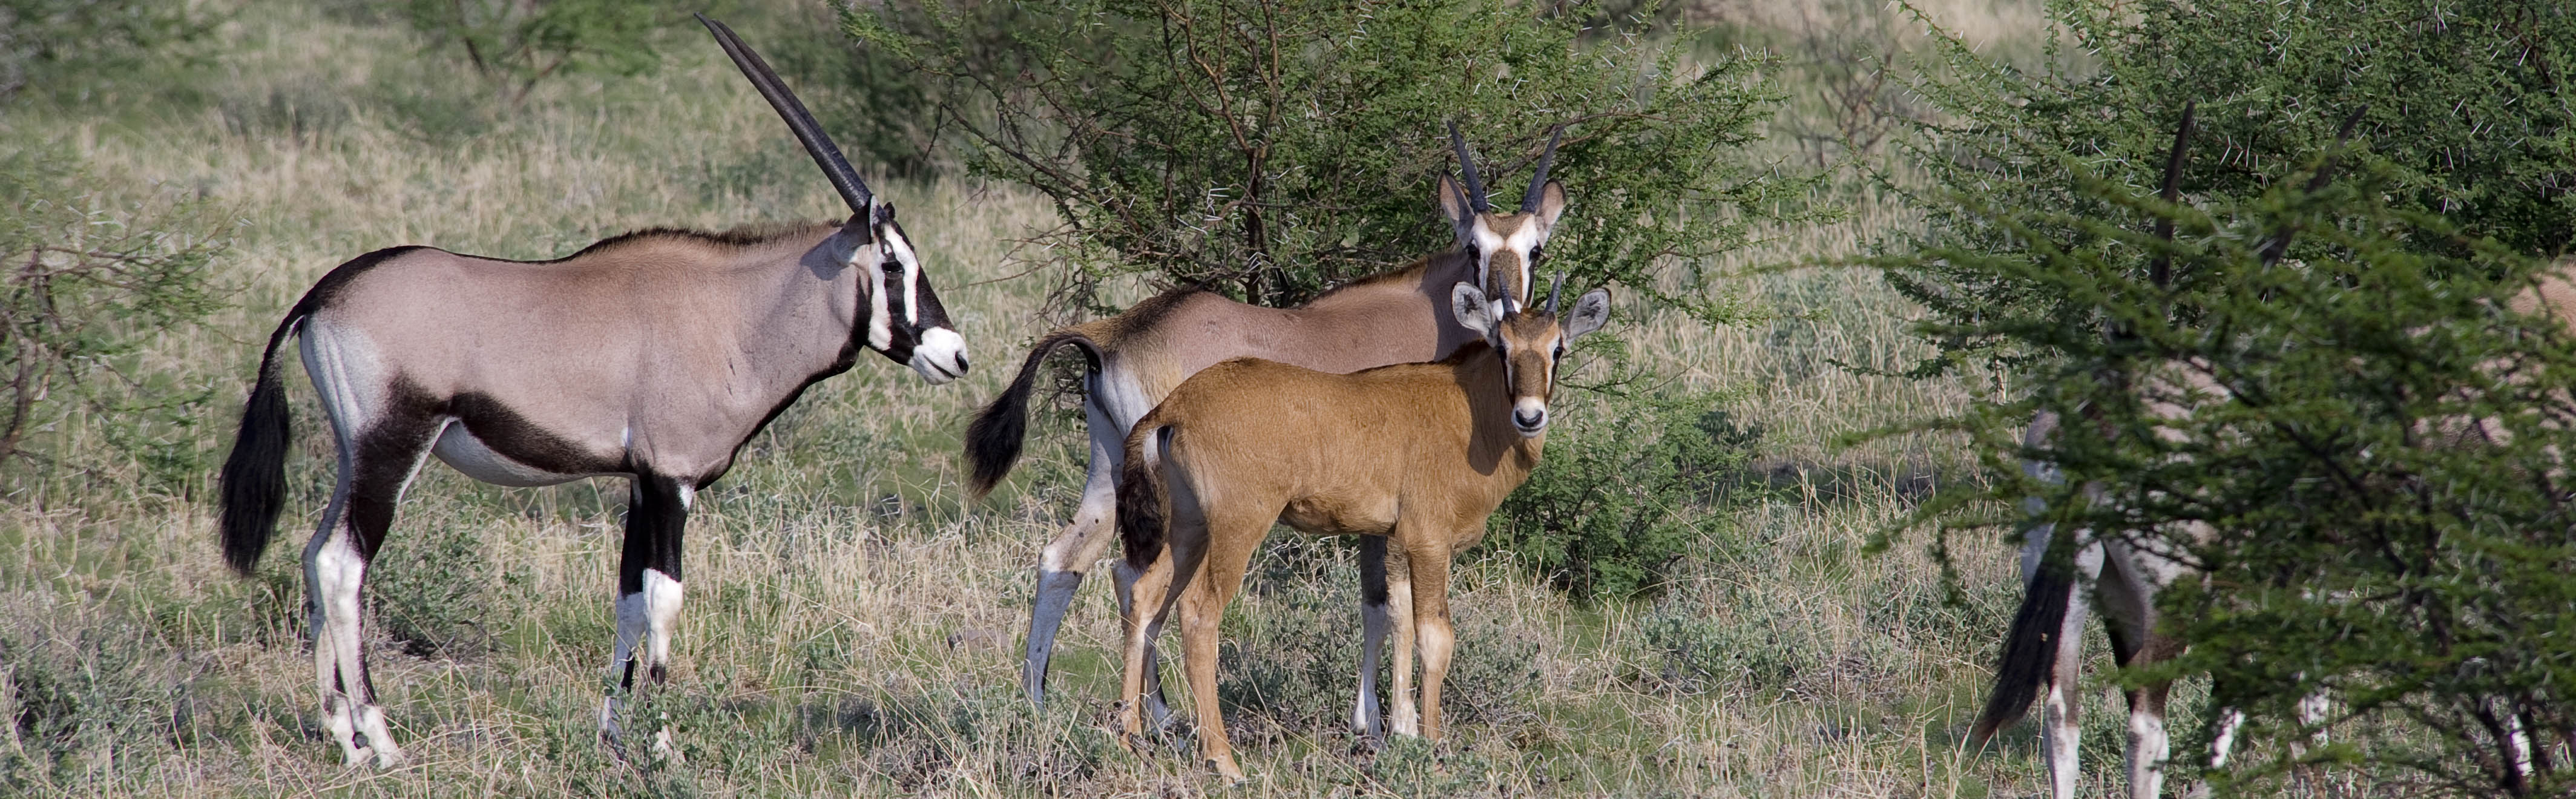 Adult and juvenile gemsbok in Central Kalahari | J.Goetz